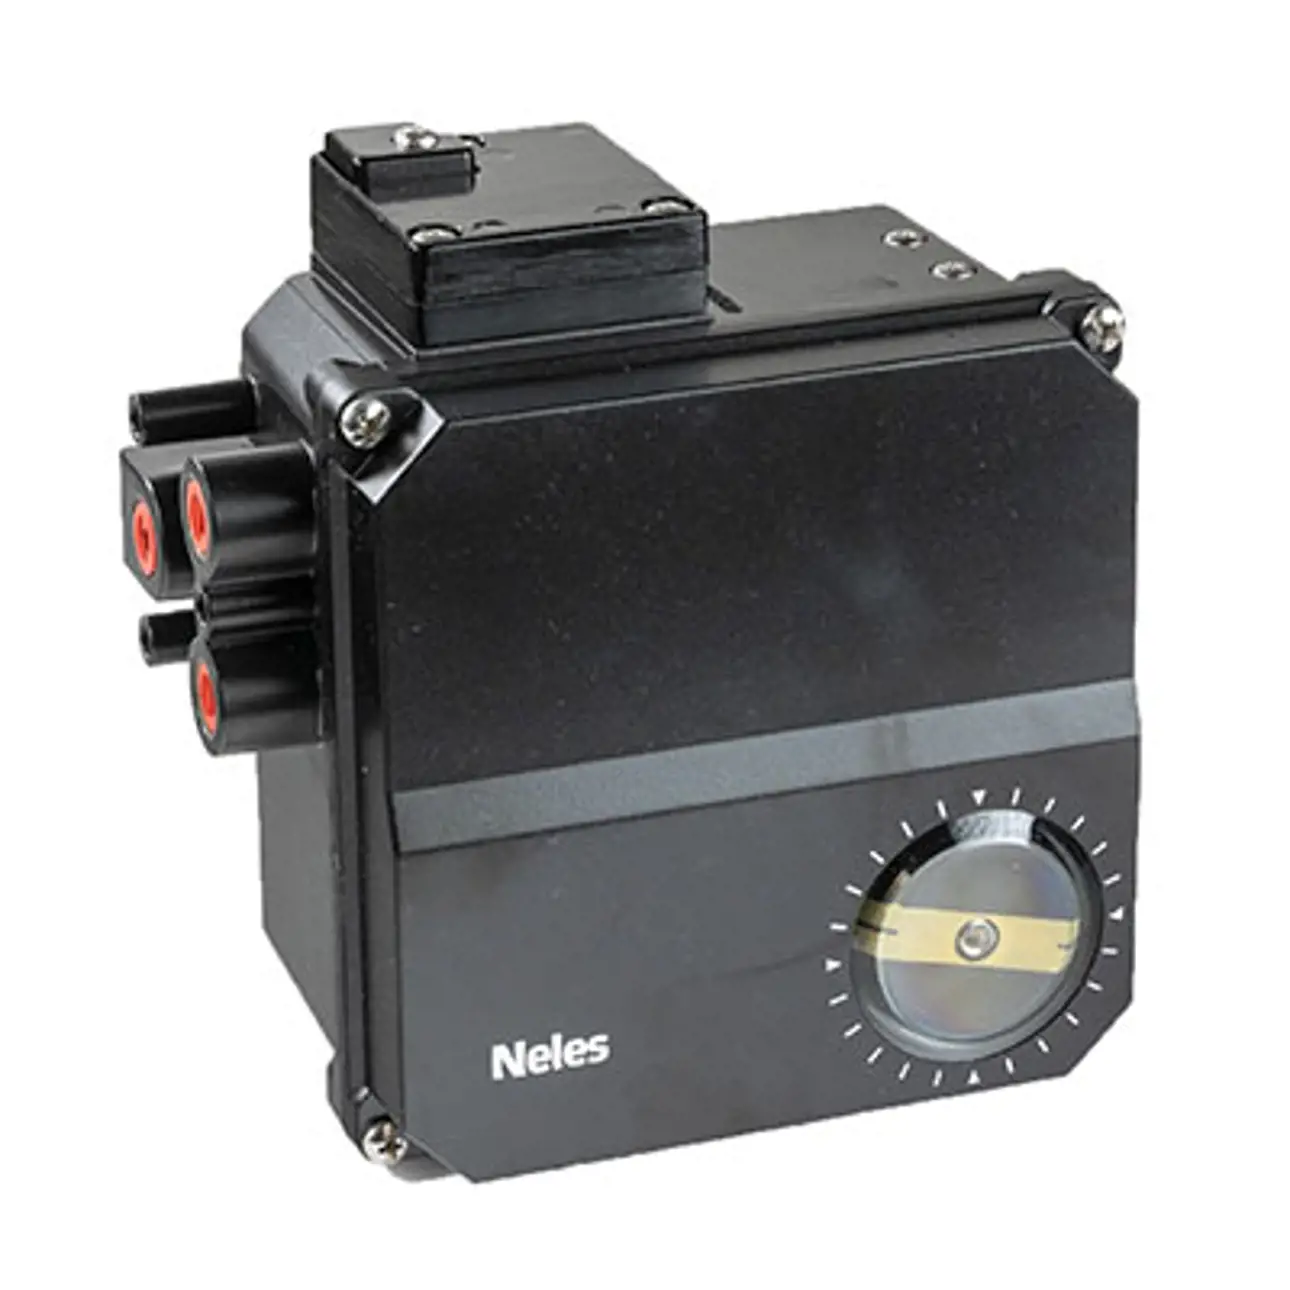 Neles-NE7000-positioner.jpg